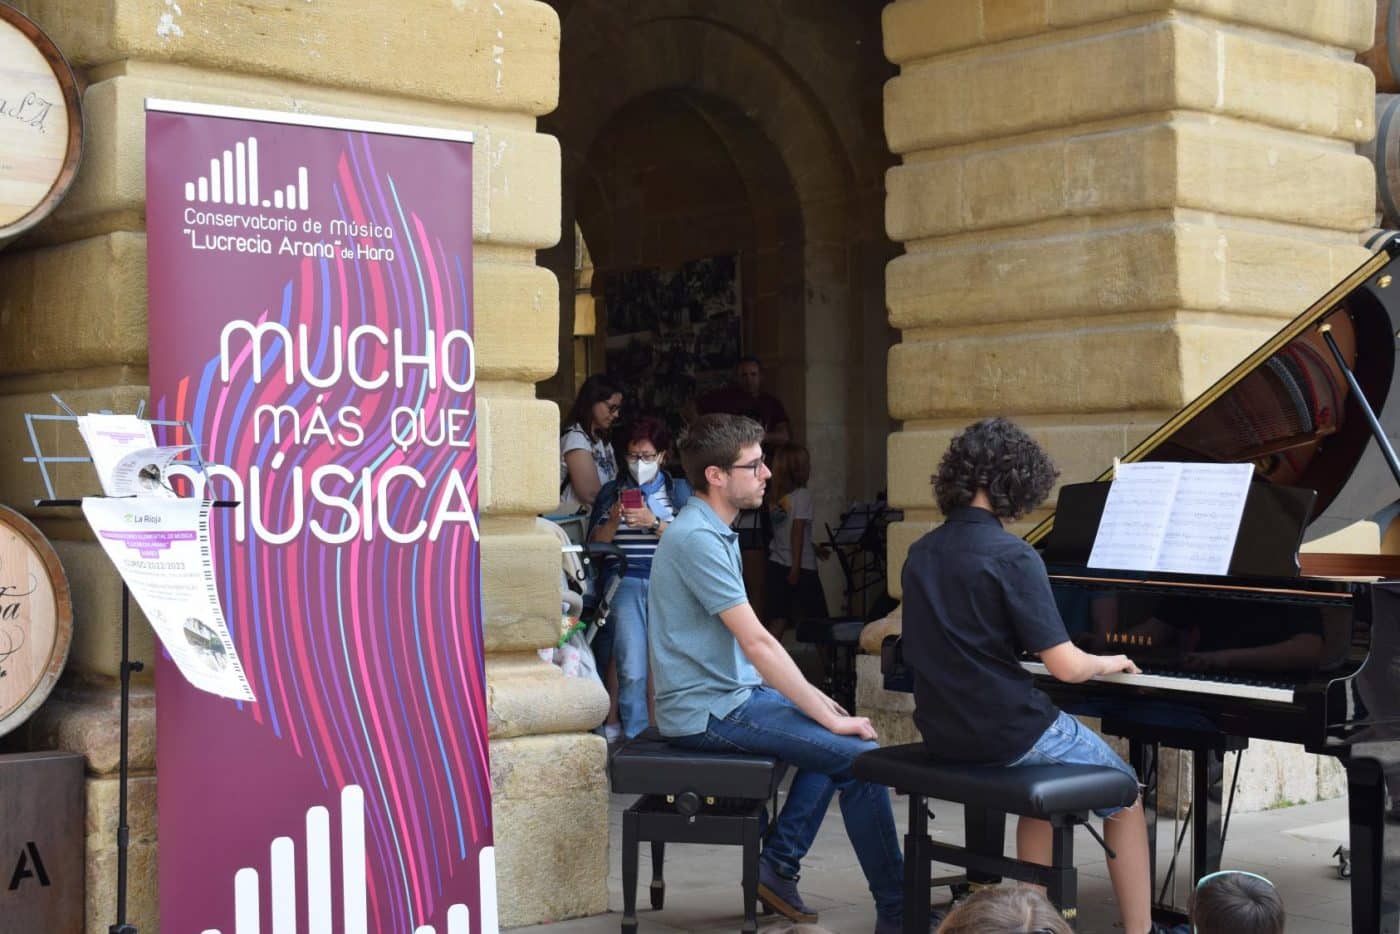 FOTOS: El Conservatorio Lucrecia Arana celebra el fin de curso sacando la música a la calle 16